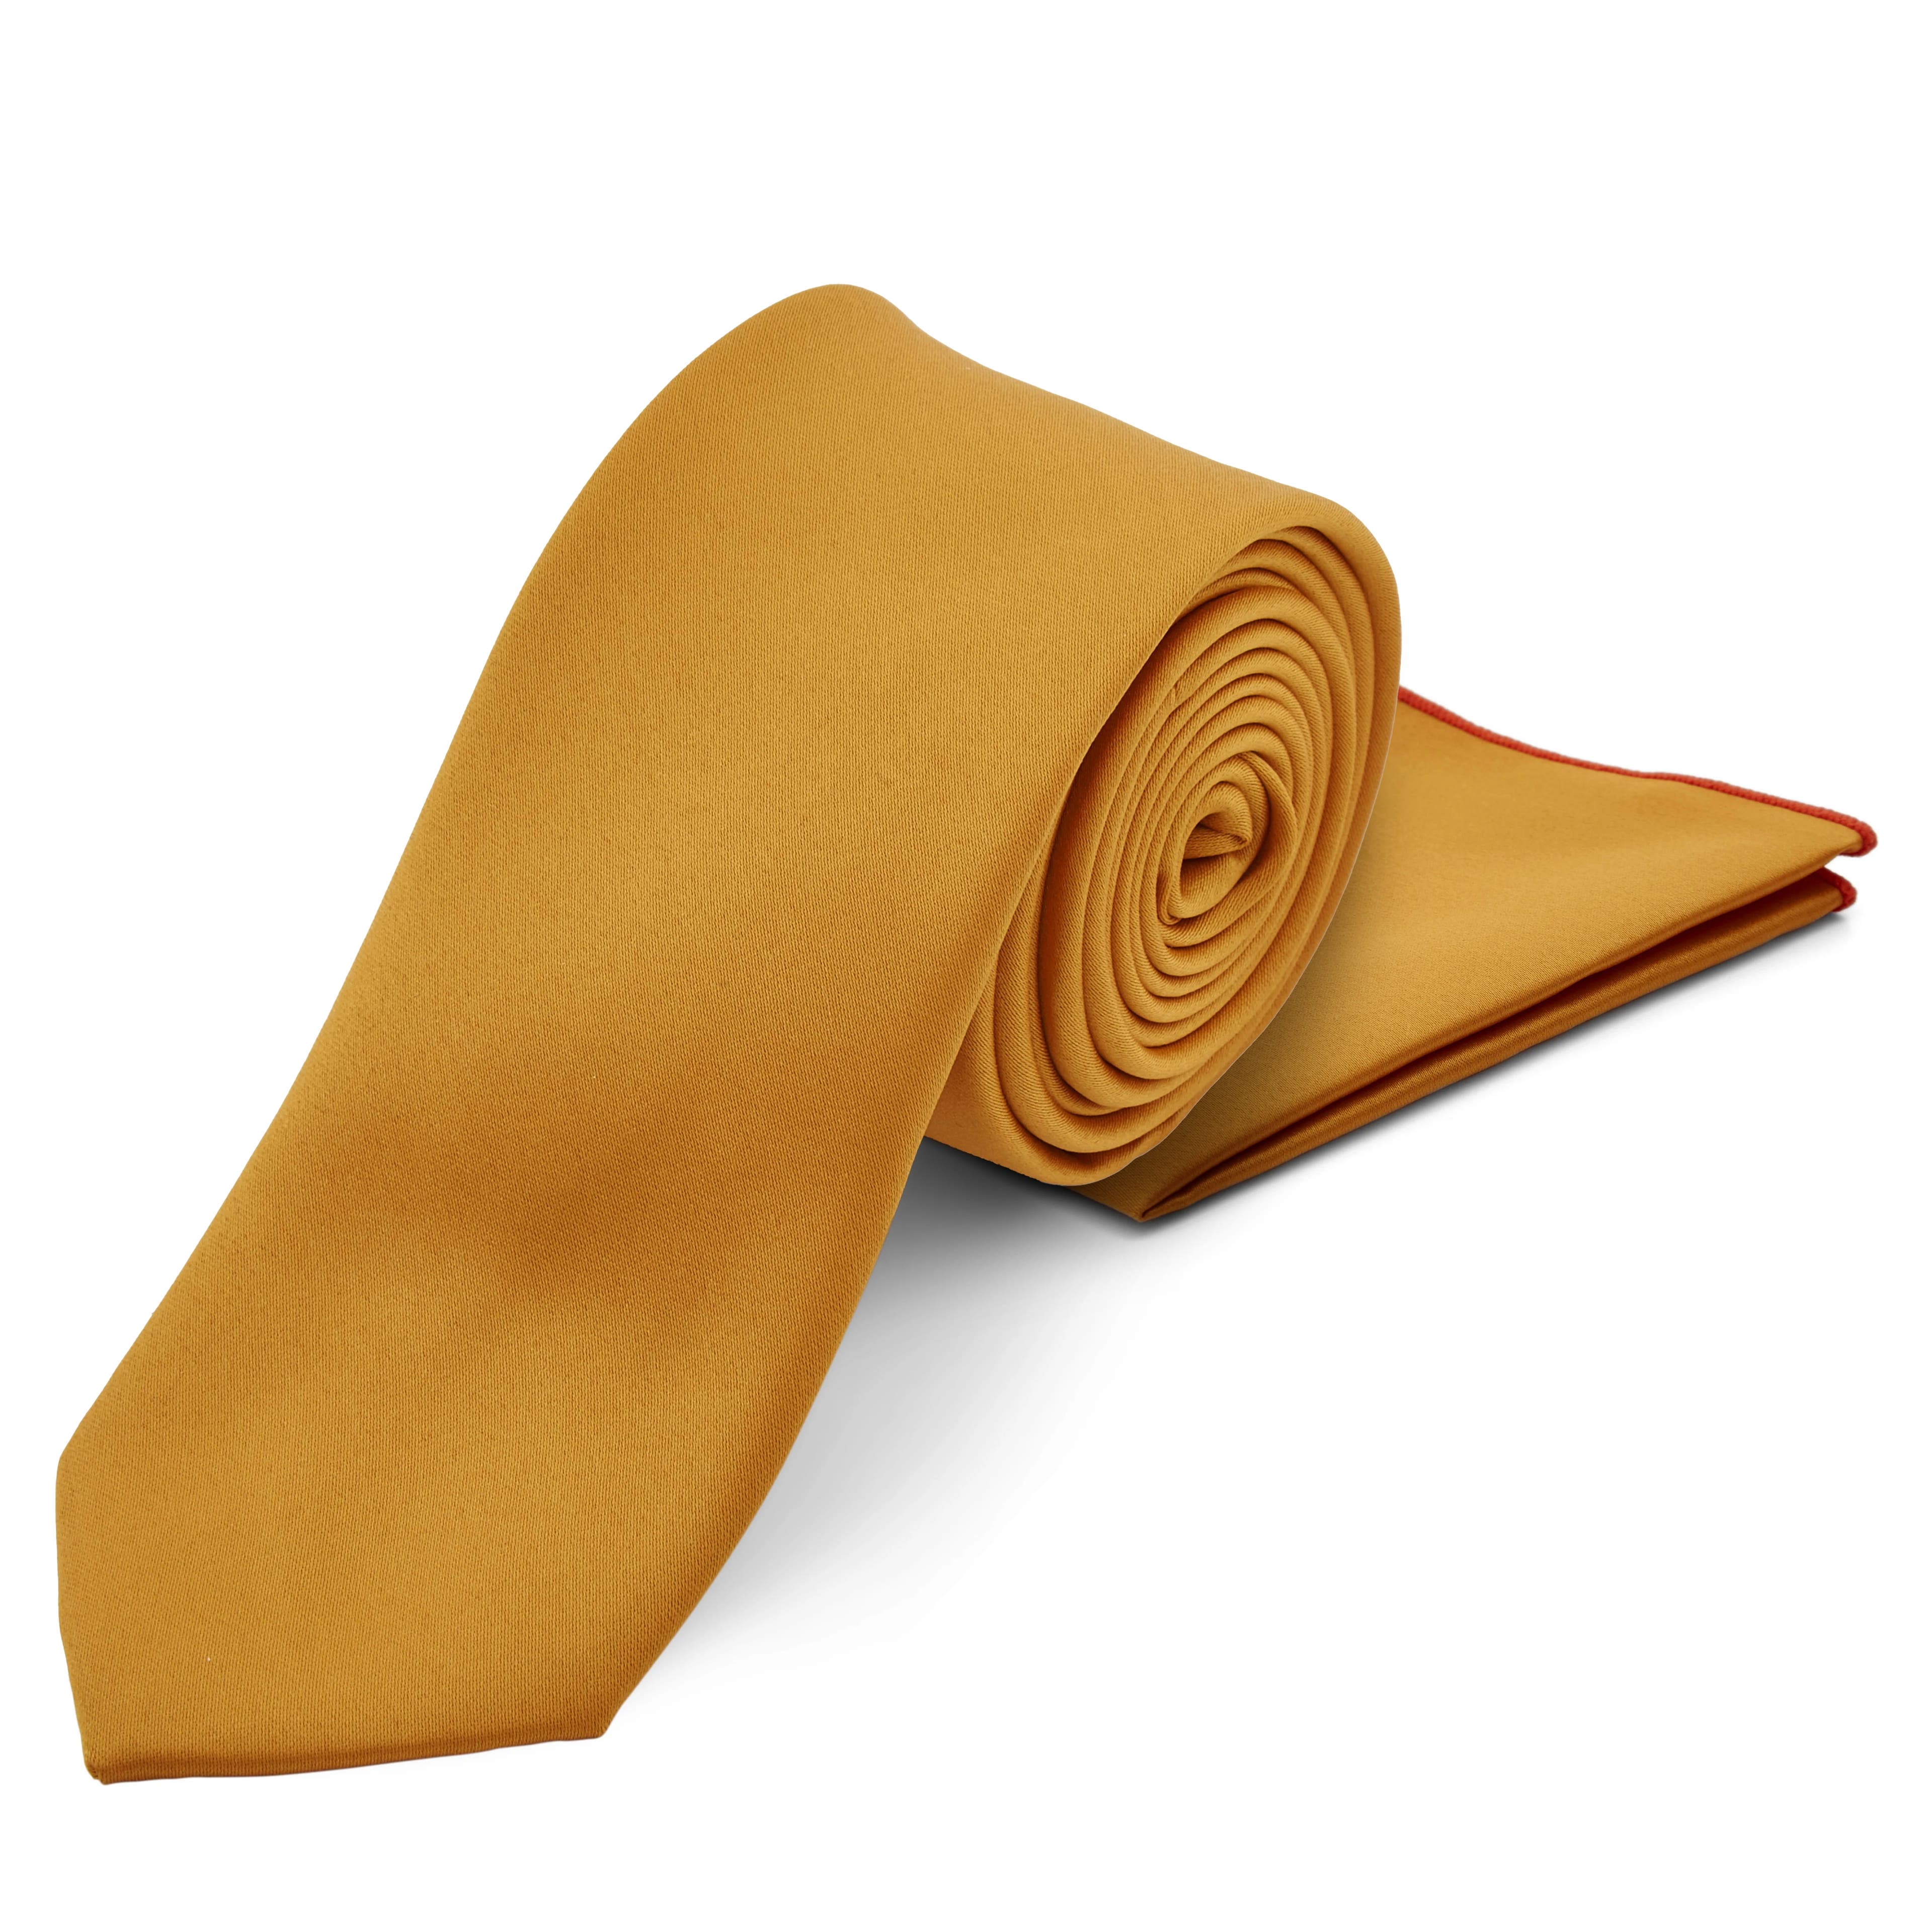 Syksyinen solmio ja taskuliina